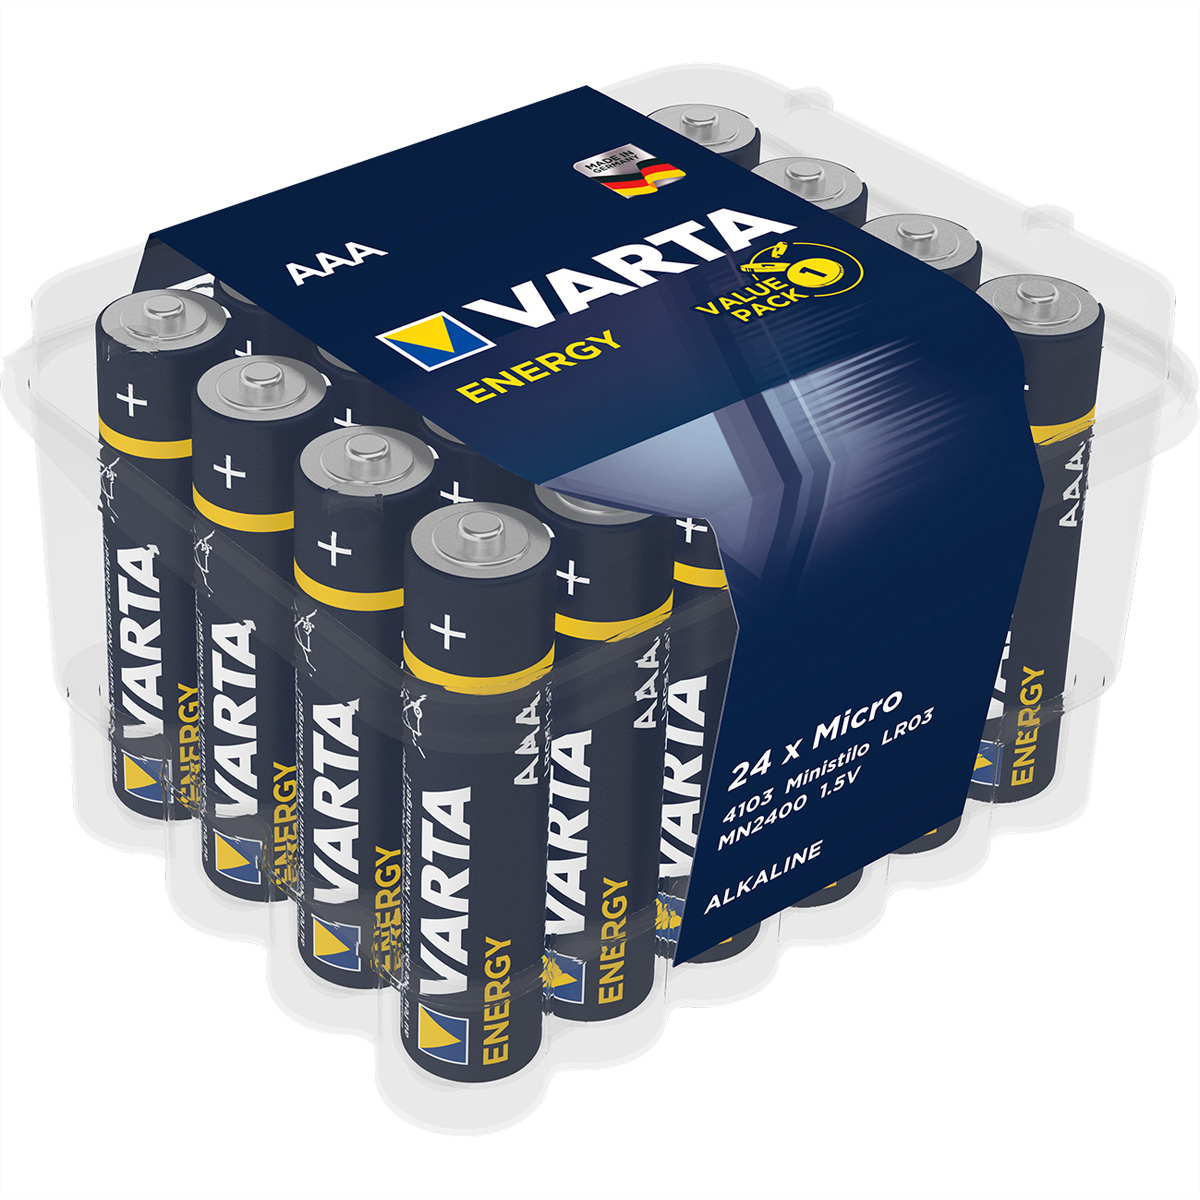 VARTA Batterie Micro AAA, AM-4, LR 03, 1,5V, 24er Pack